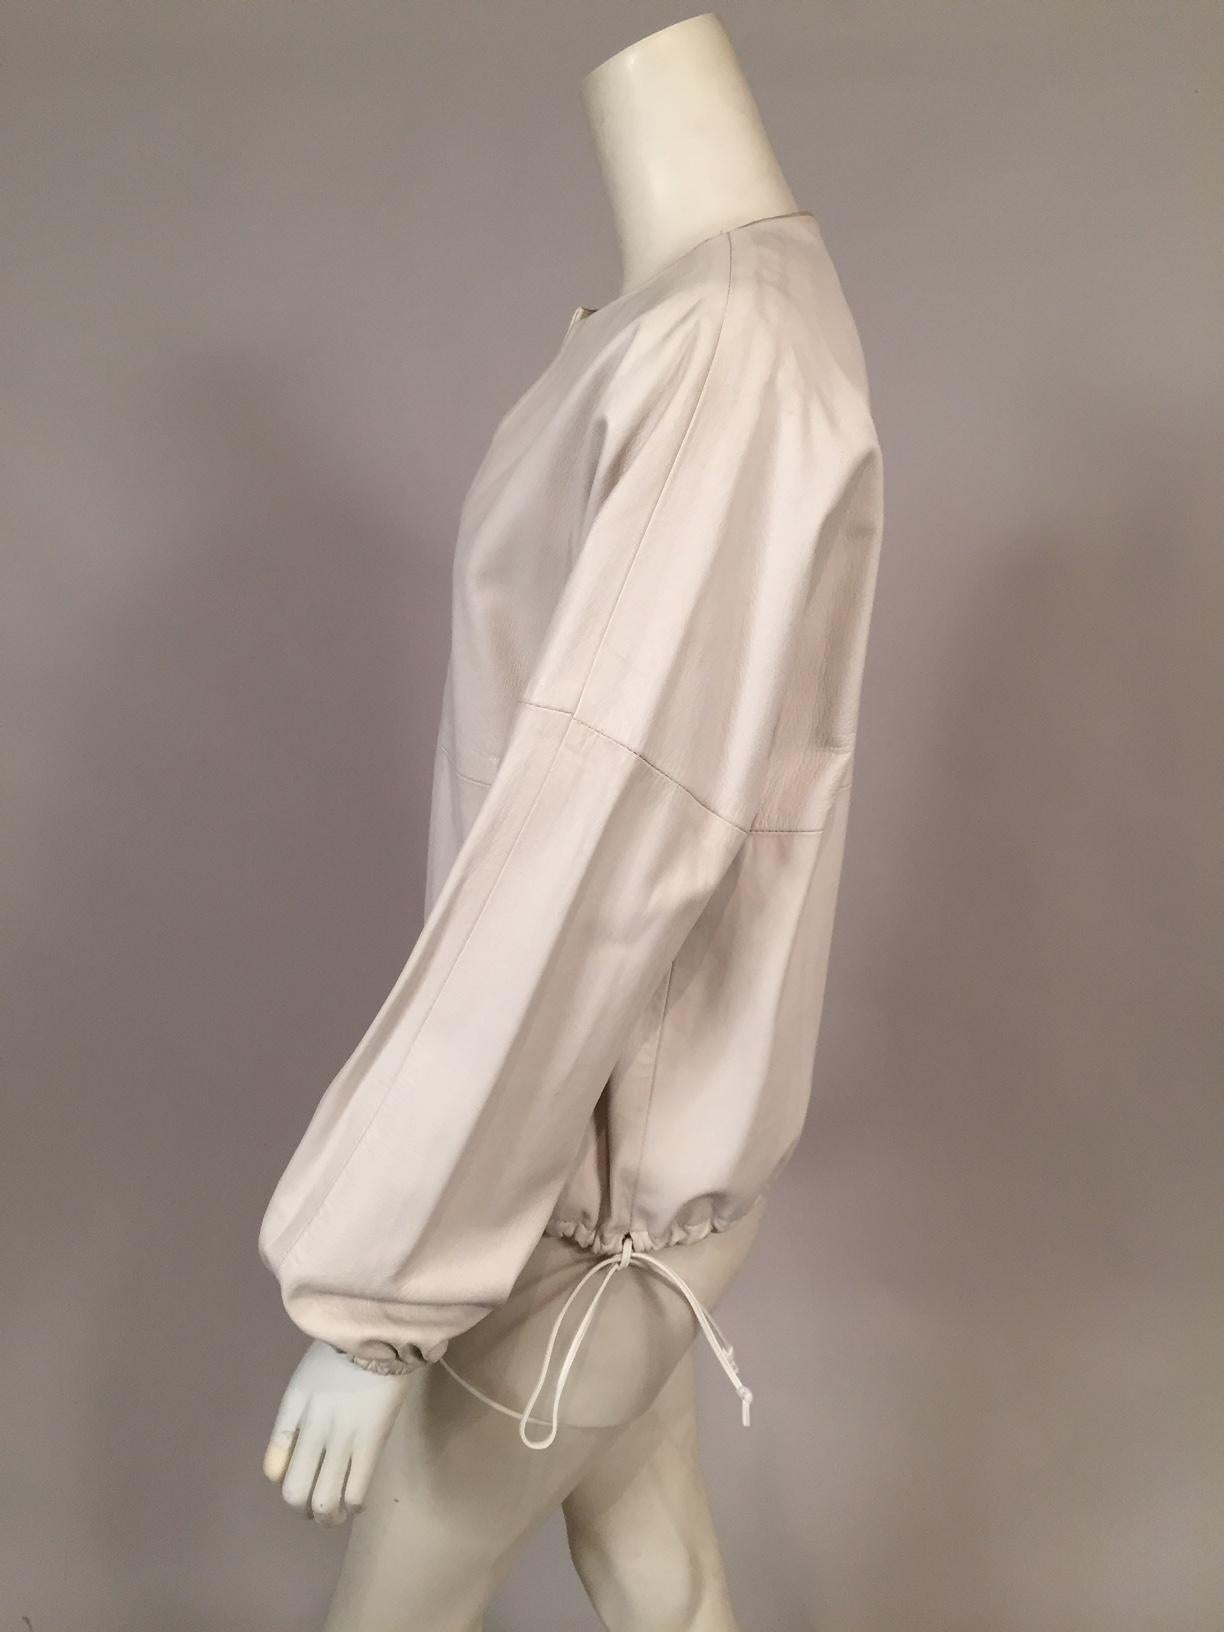 Women's or Men's 1970's Bonwit Teller White Leather Pullover Blouson Top